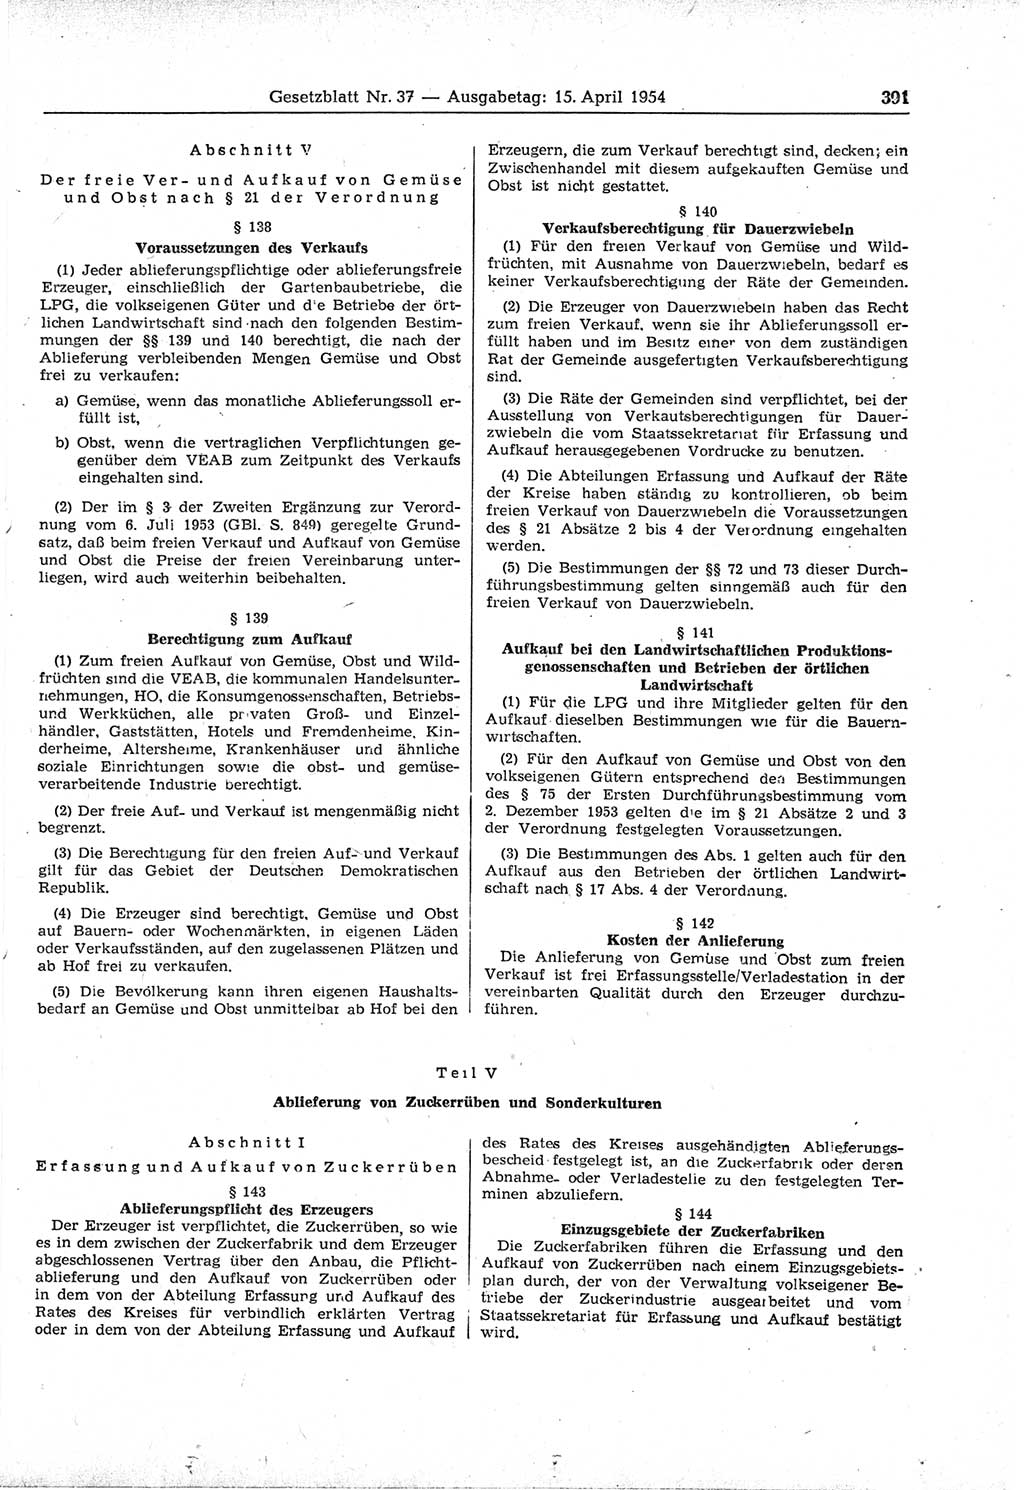 Gesetzblatt (GBl.) der Deutschen Demokratischen Republik (DDR) 1954, Seite 391 (GBl. DDR 1954, S. 391)